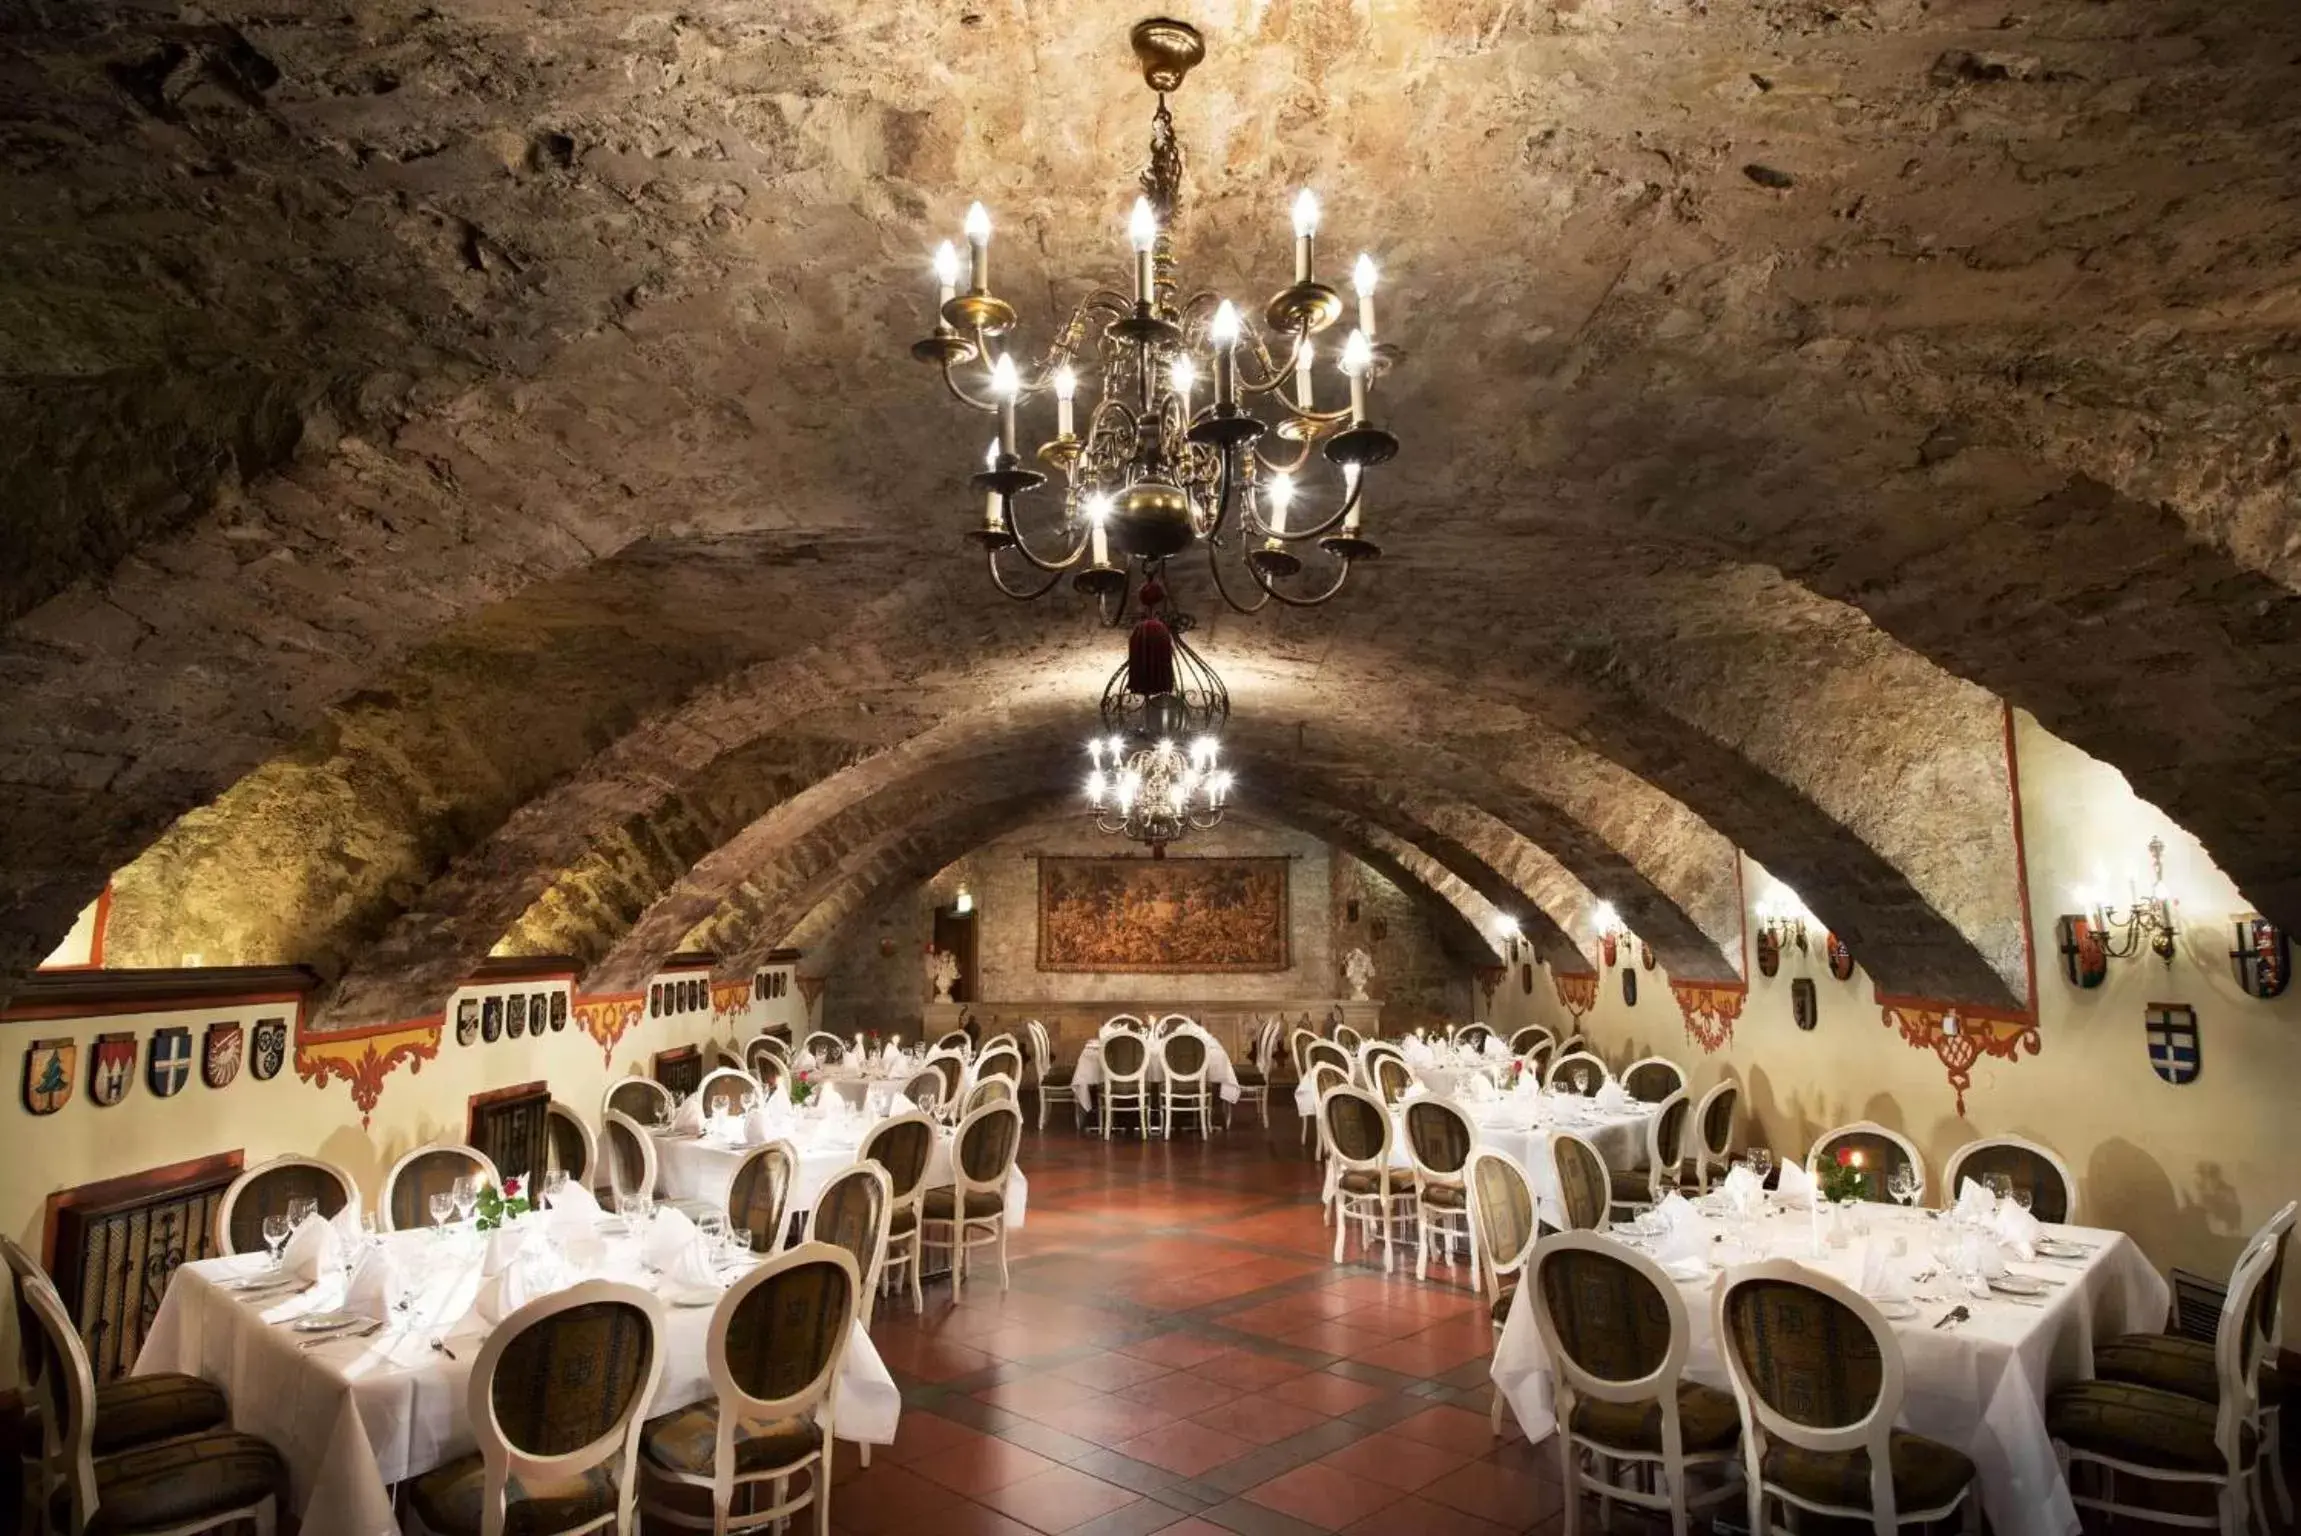 Banquet/Function facilities, Banquet Facilities in Maritim Hotel Am Schlossgarten